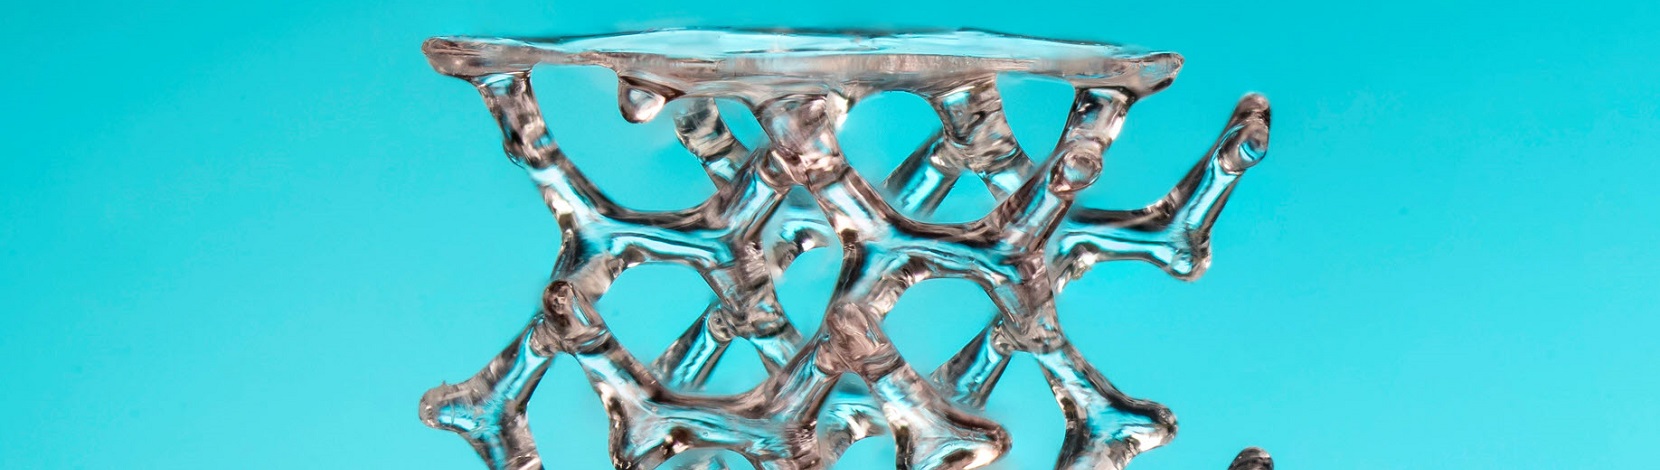 Schneller 3D-Druck von kleinen und komplexen Bauteilen aus Glas – Electrosuisse